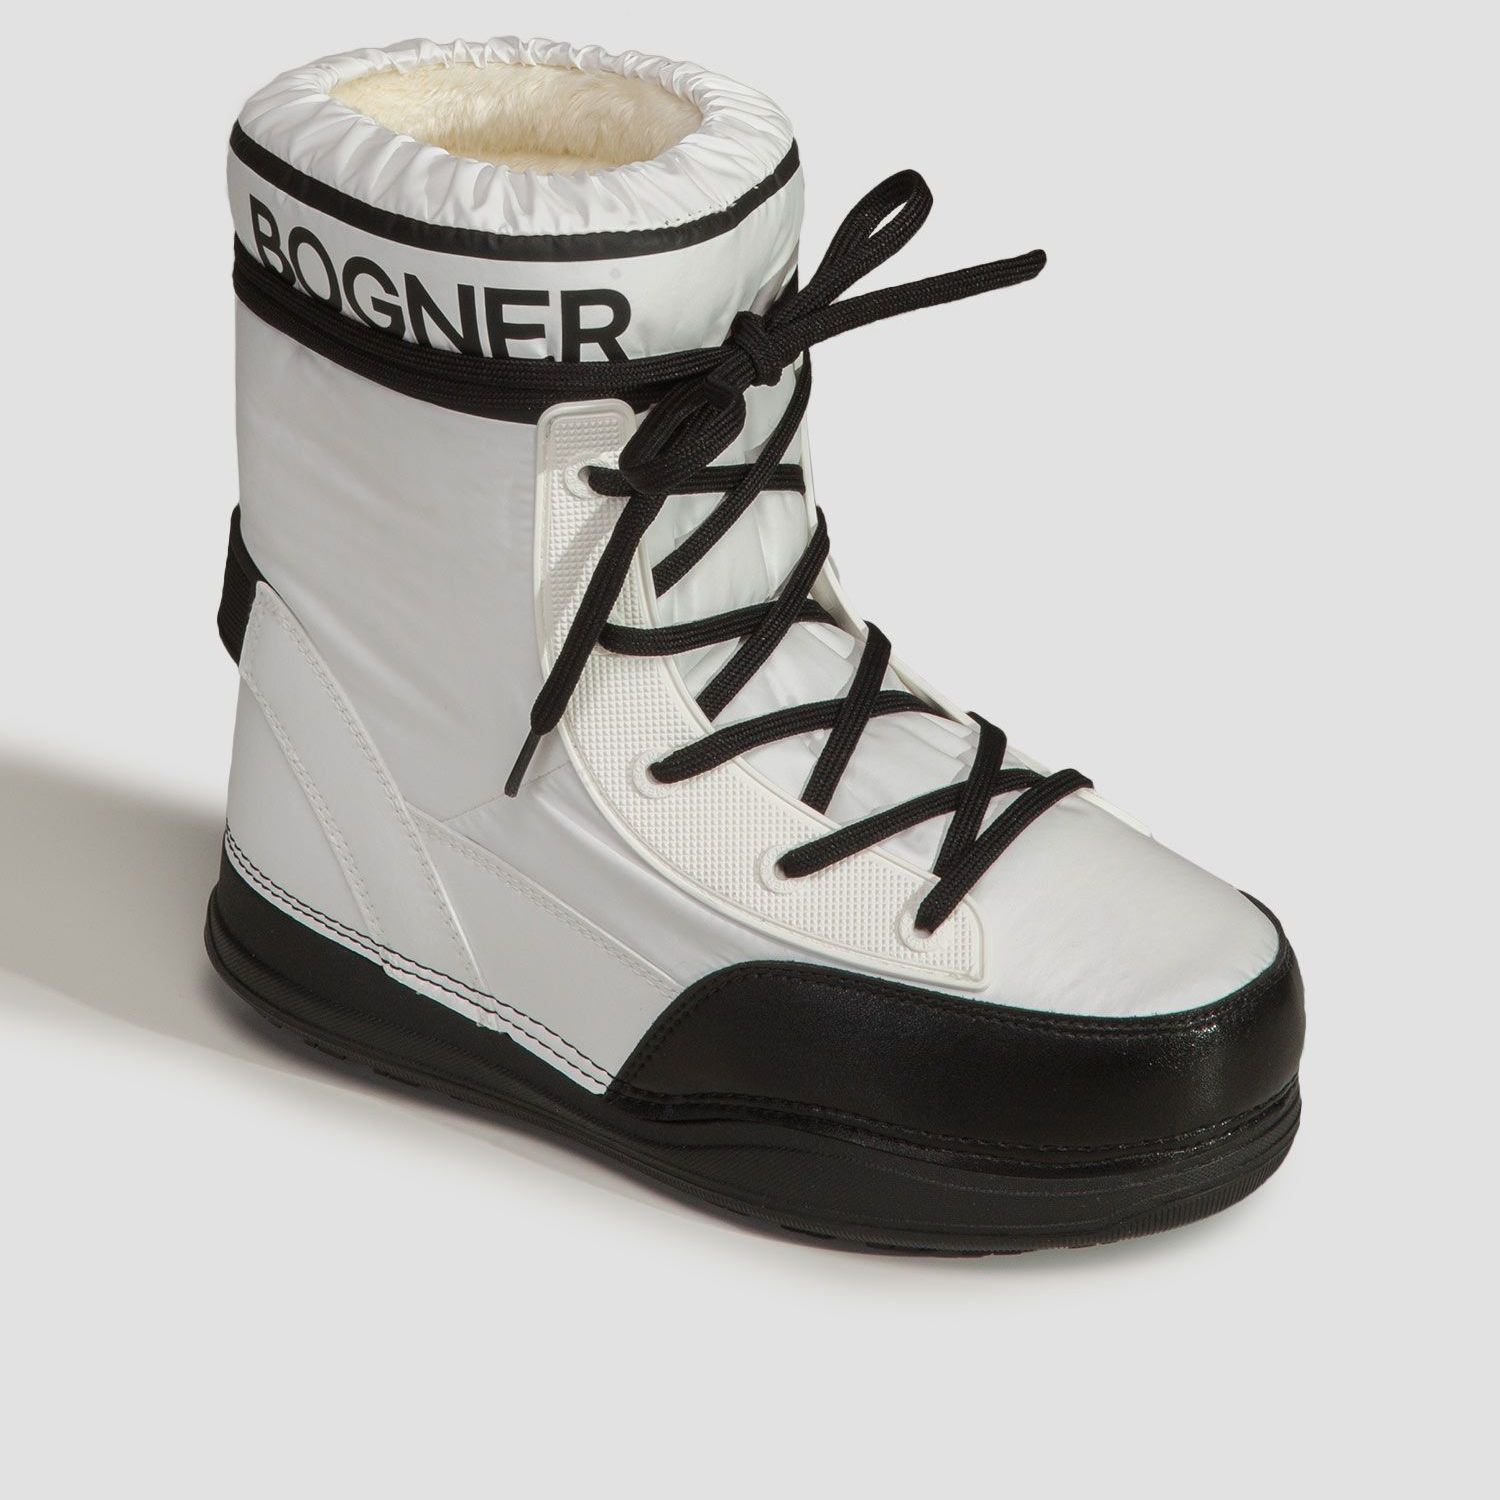 Incaltaminte De Iarna -  bogner La Plagne 1B Snow boots